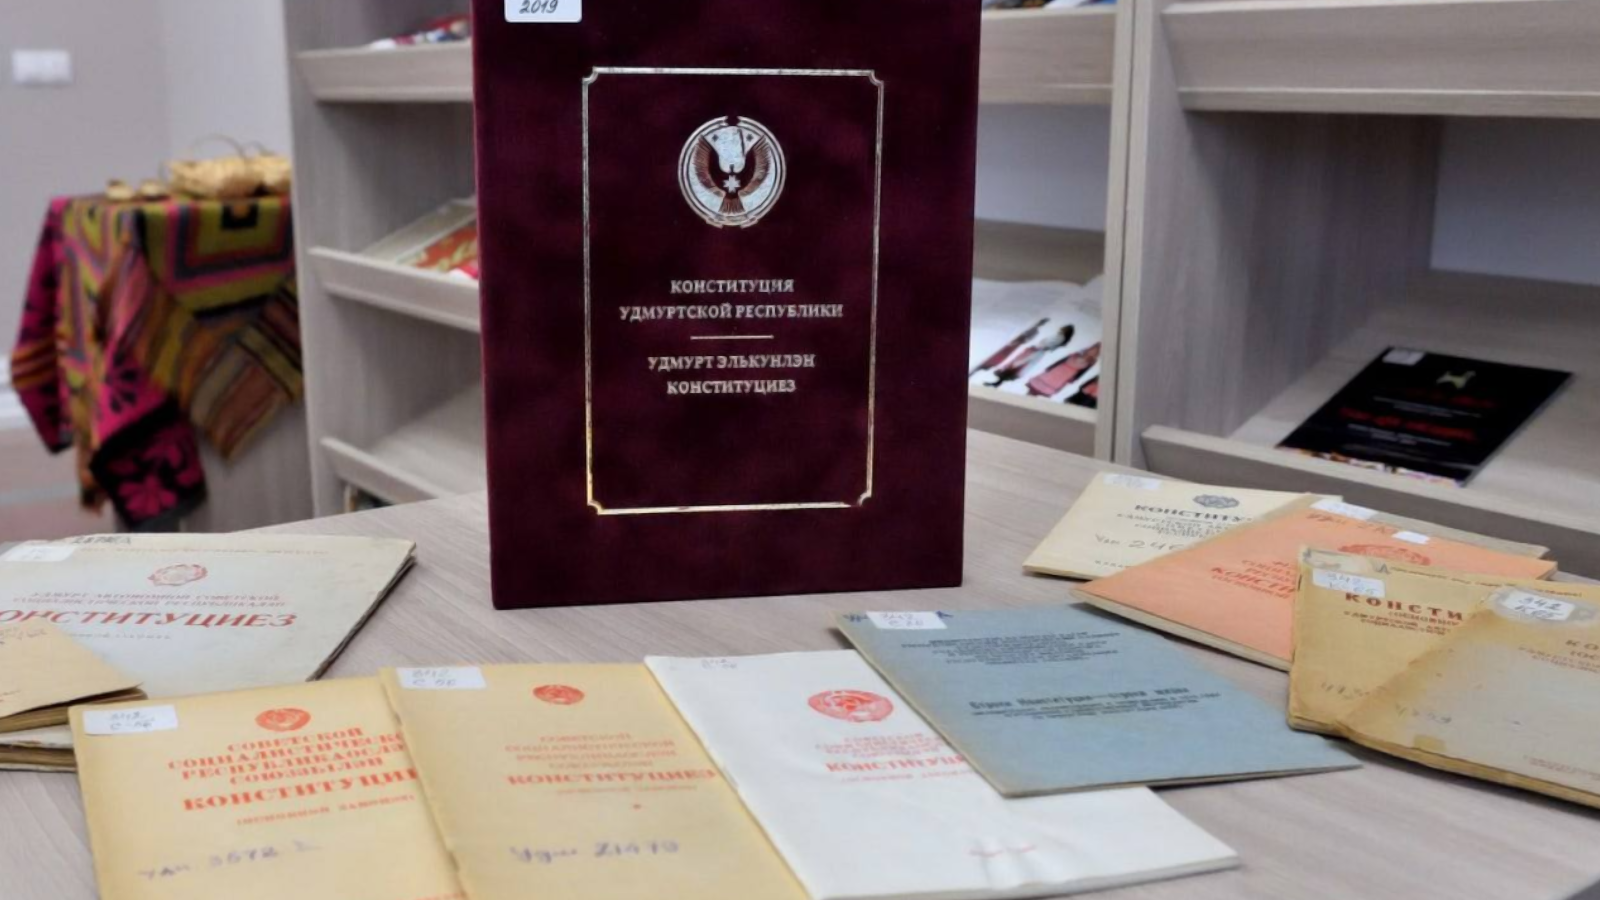 7 декабря — День Конституции Удмуртской Республики